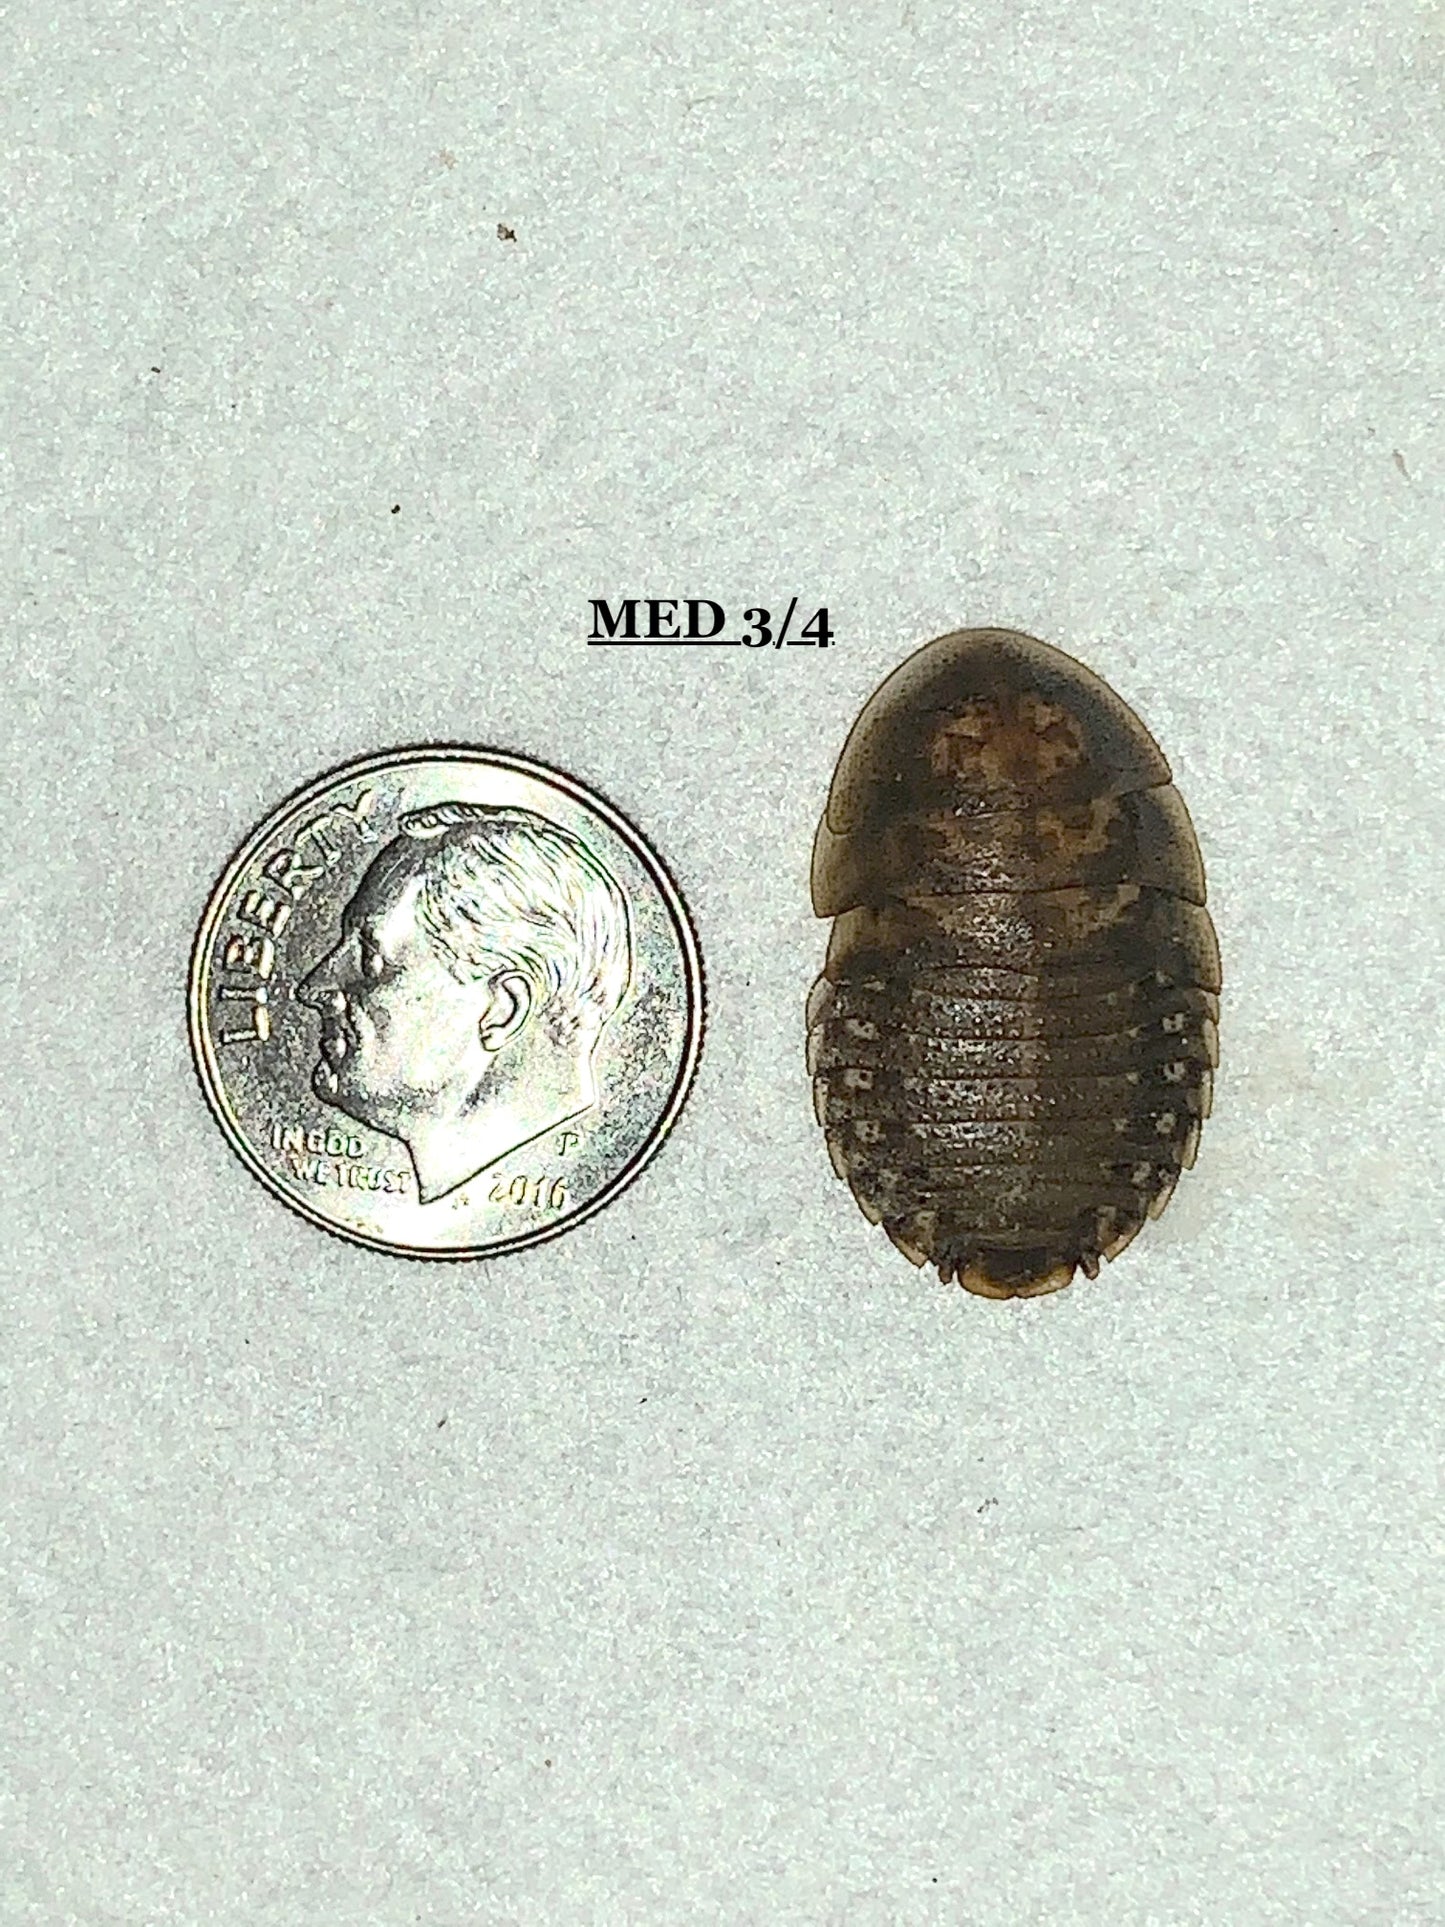 Dubia Roach Feeders 2000 Medium 3/4 inch